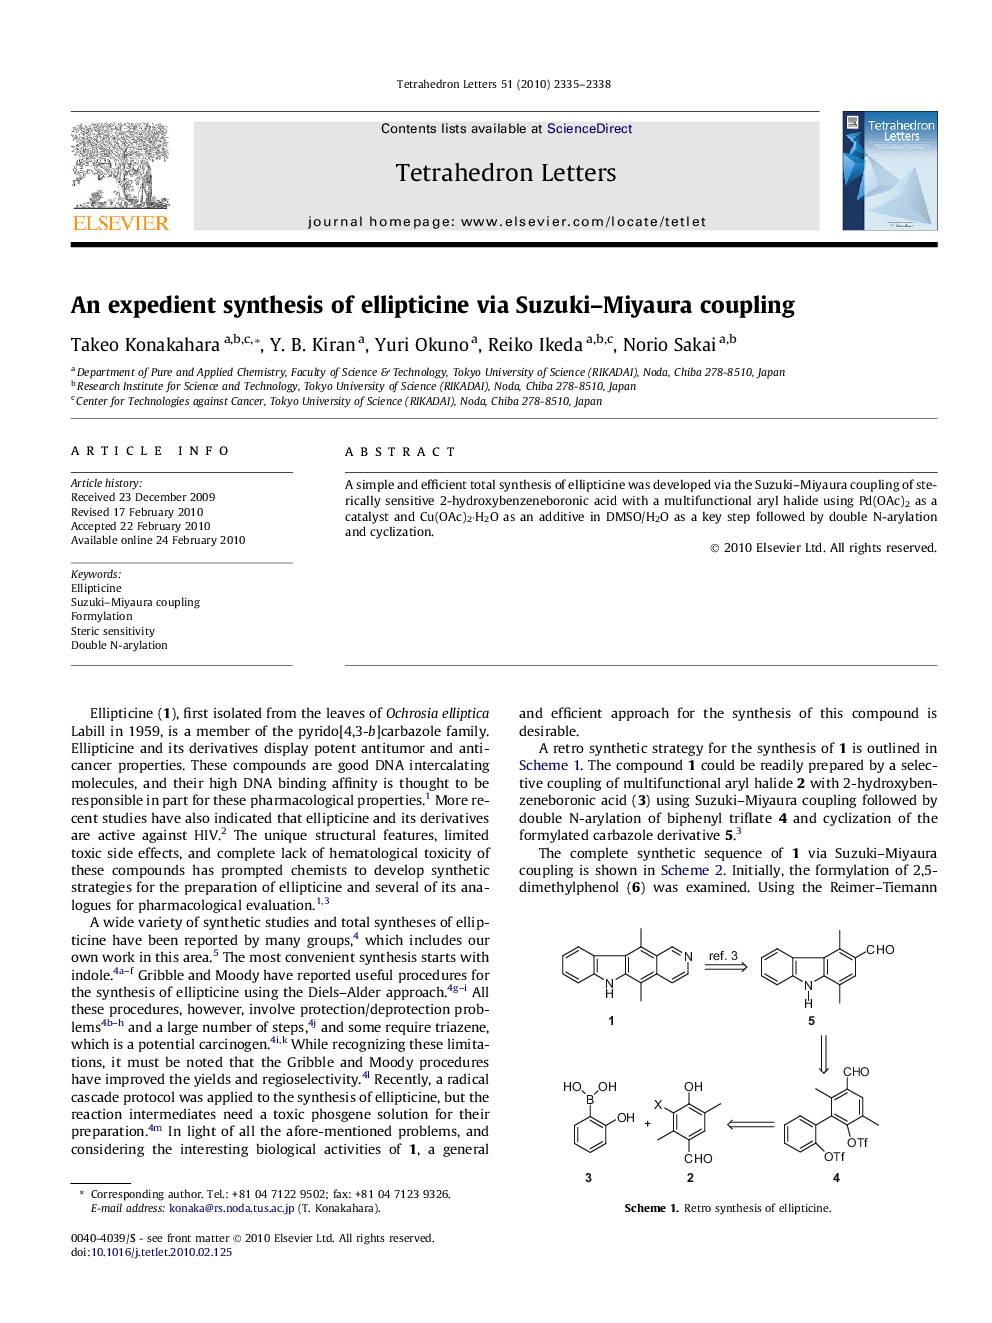 An expedient synthesis of ellipticine via Suzuki-Miyaura coupling